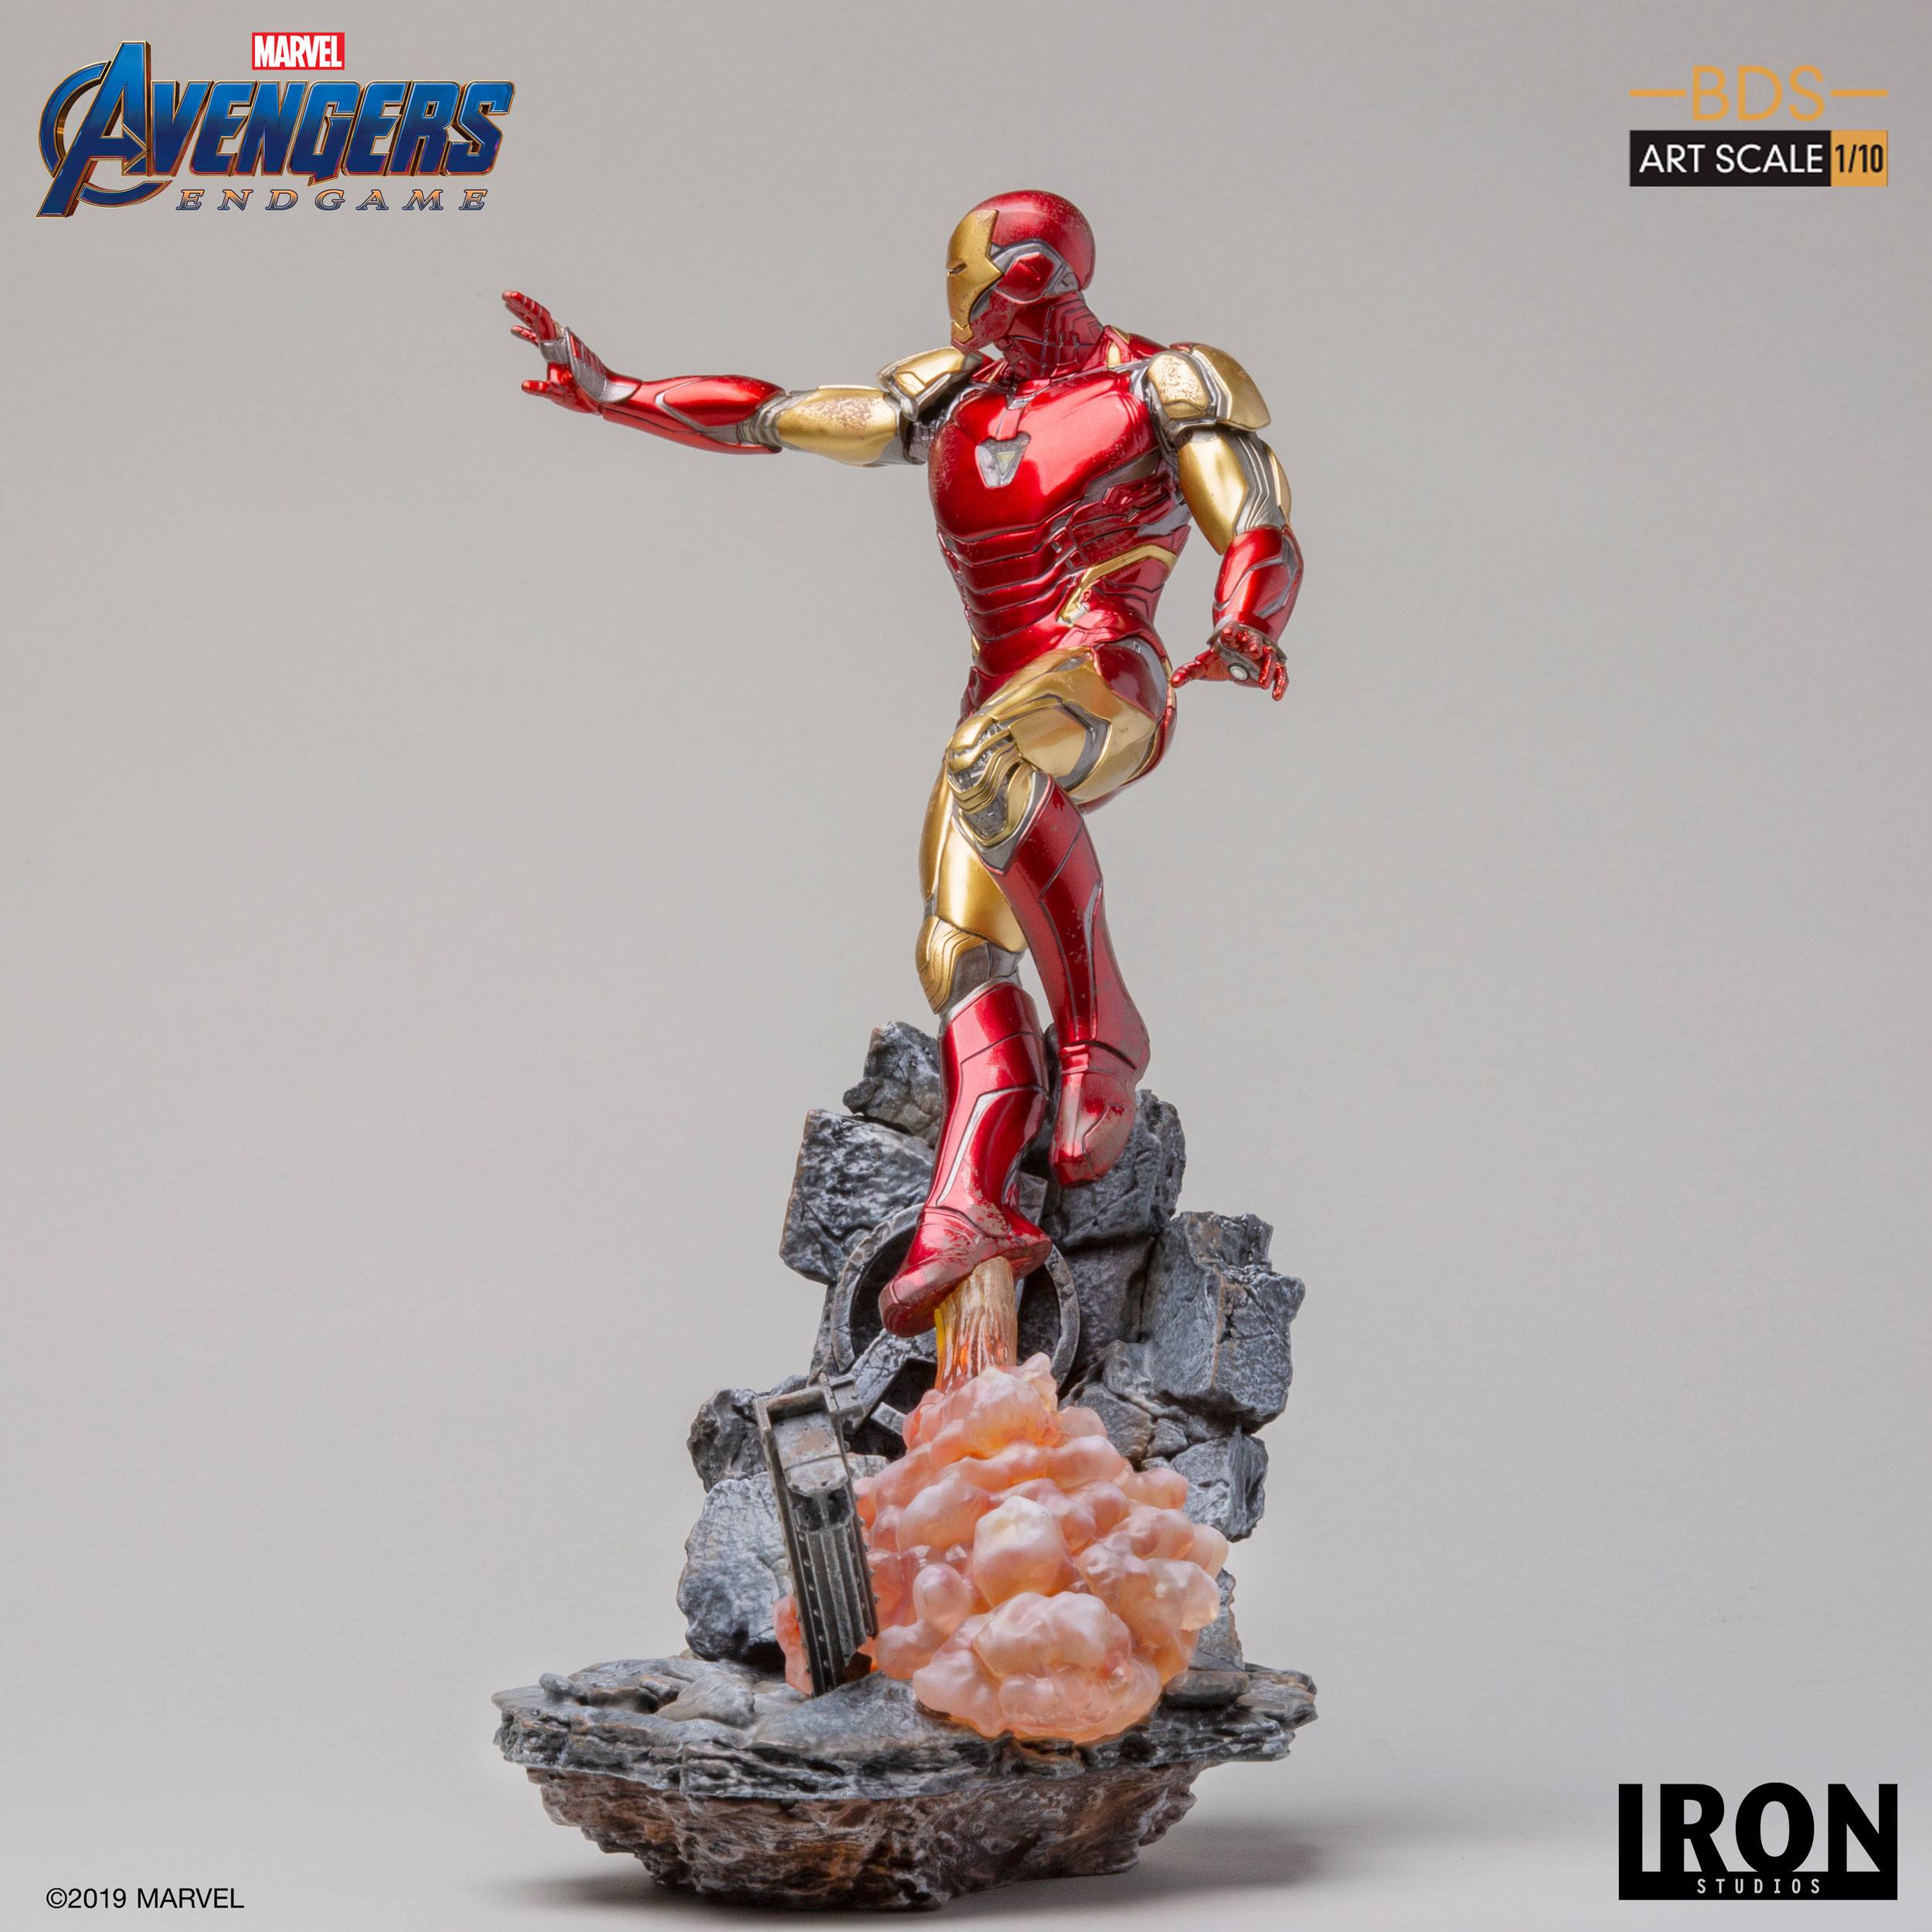 Viento Con rapidez Villano Estatua Iron Man Mark LXXXV (29 cm) - Avengers: Endgame - BDS Art Scale  1/10 | attaboy Collectibles